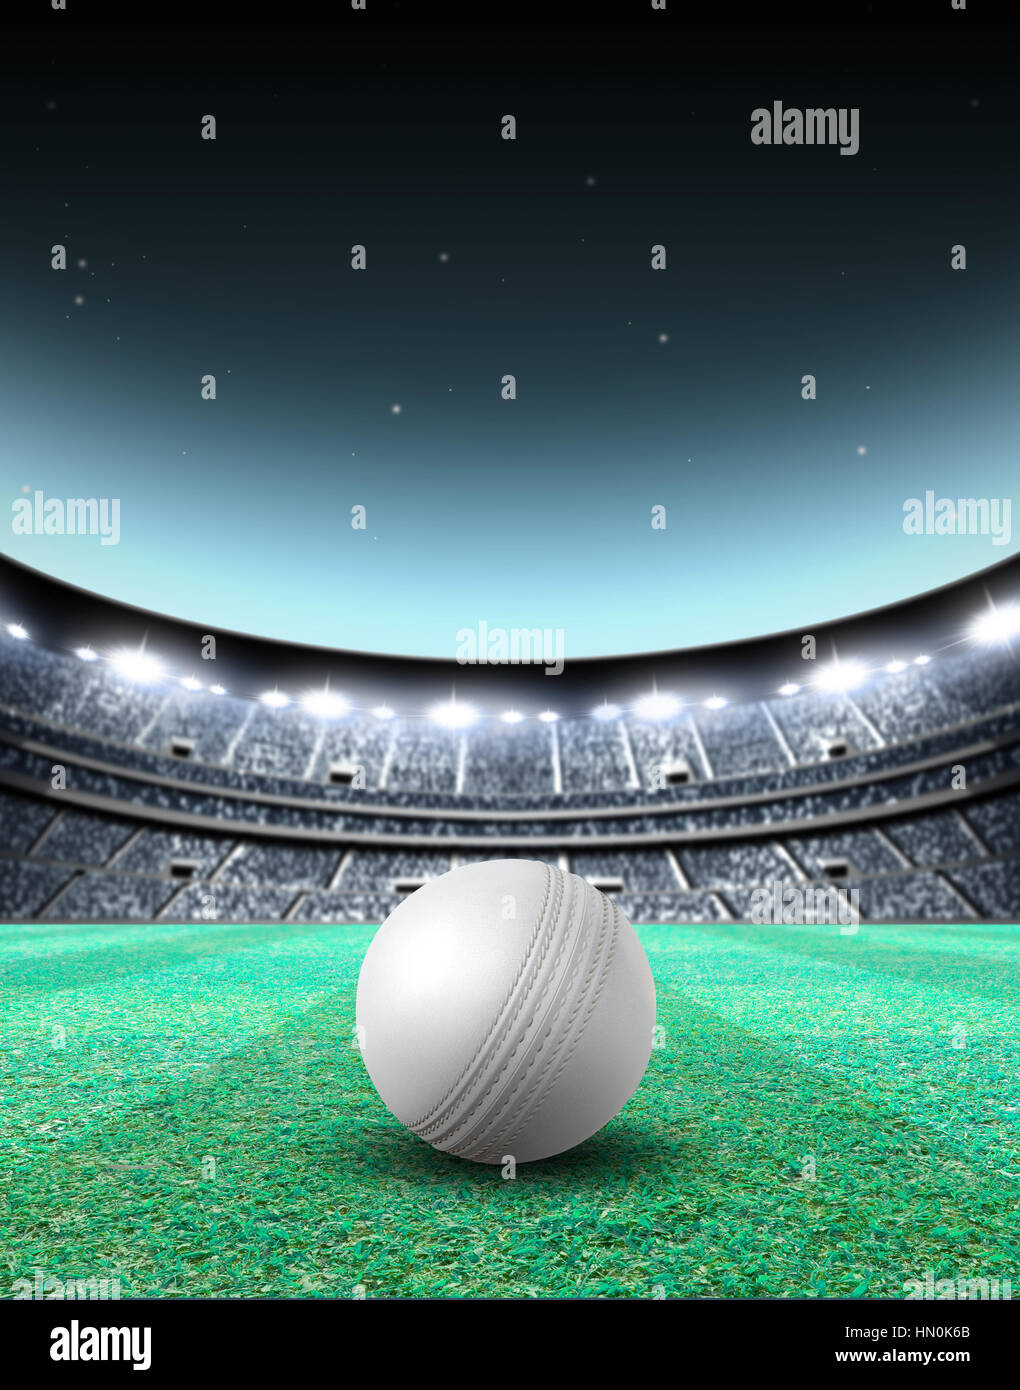 Eine generische sitzenden Cricket-Stadion mit einem weißen Ball auf einem grünen Rasen nachts beleuchteten Flutlicht - 3D render Stockfoto